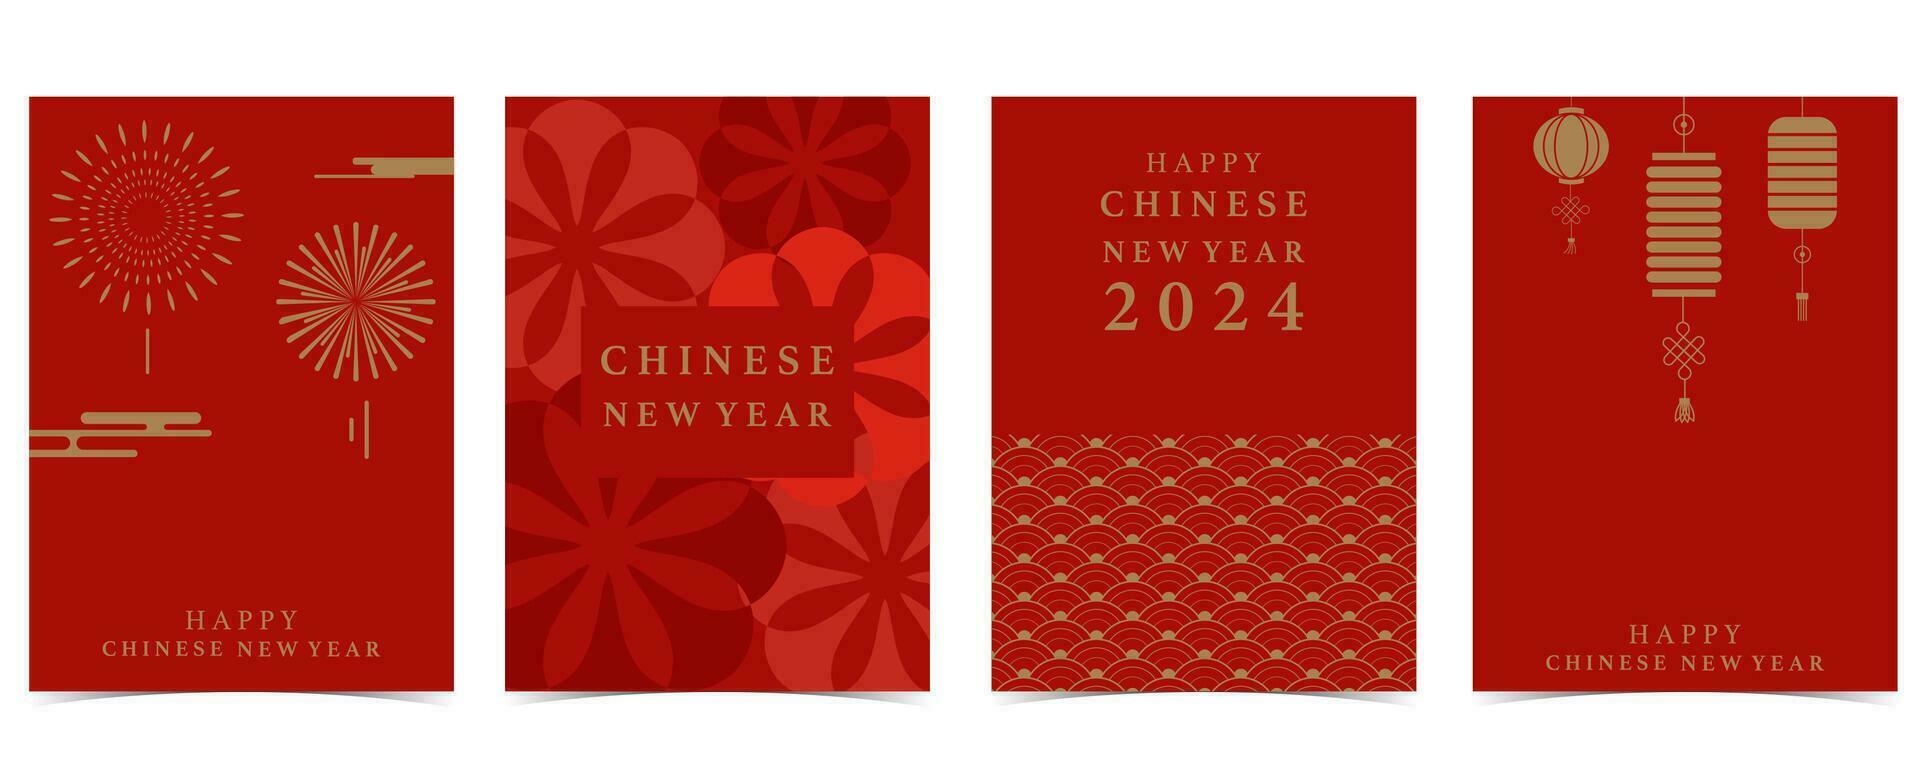 Gold rot Chinesisch Neu Jahr Hintergrund mit Laterne, Wolke.bearbeitbar Vektor Illustration zum Postkarte, A4 GrößeGold rot Chinesisch Neu Jahr Hintergrund mit Laterne, Wolke.